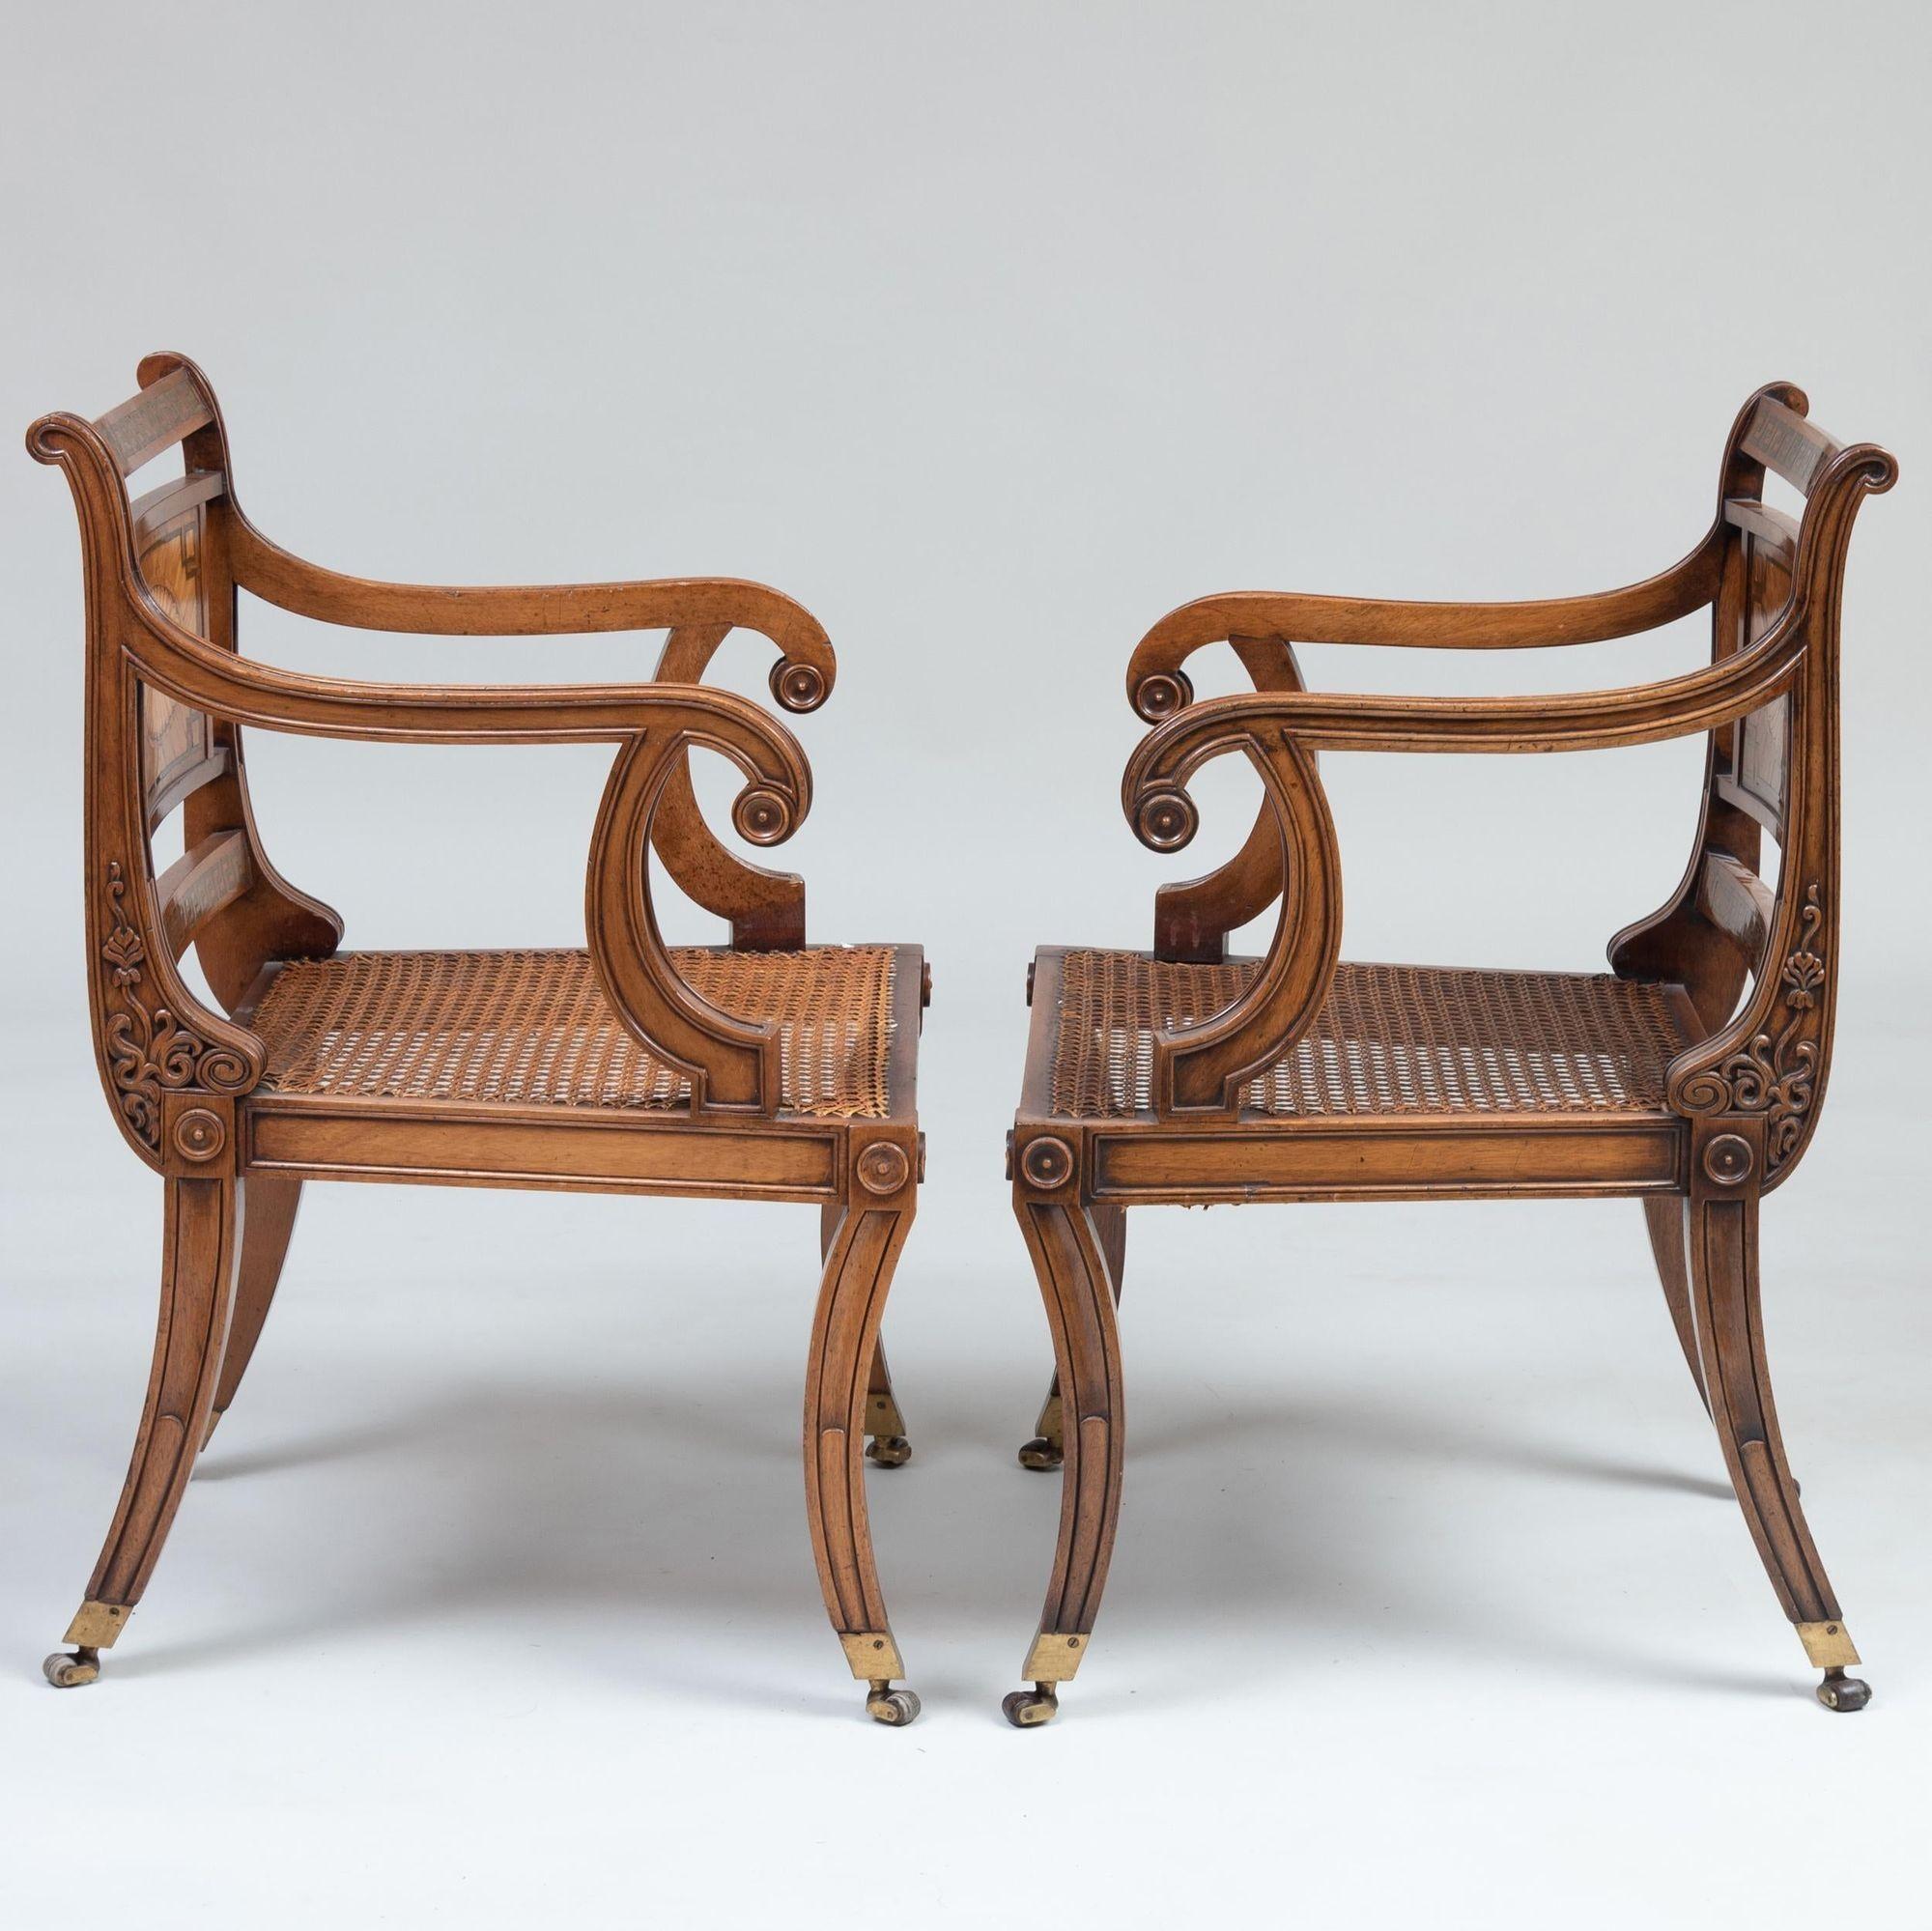 Remarquable ensemble de 10 chaises de style Regency en acajou incrusté de laiton avec placages de bois de rose, de bois de satin et de bois de roi, ayant des panneaux de dossier incrustés de patères sur des sièges cannelés avec des coussins en cuir,